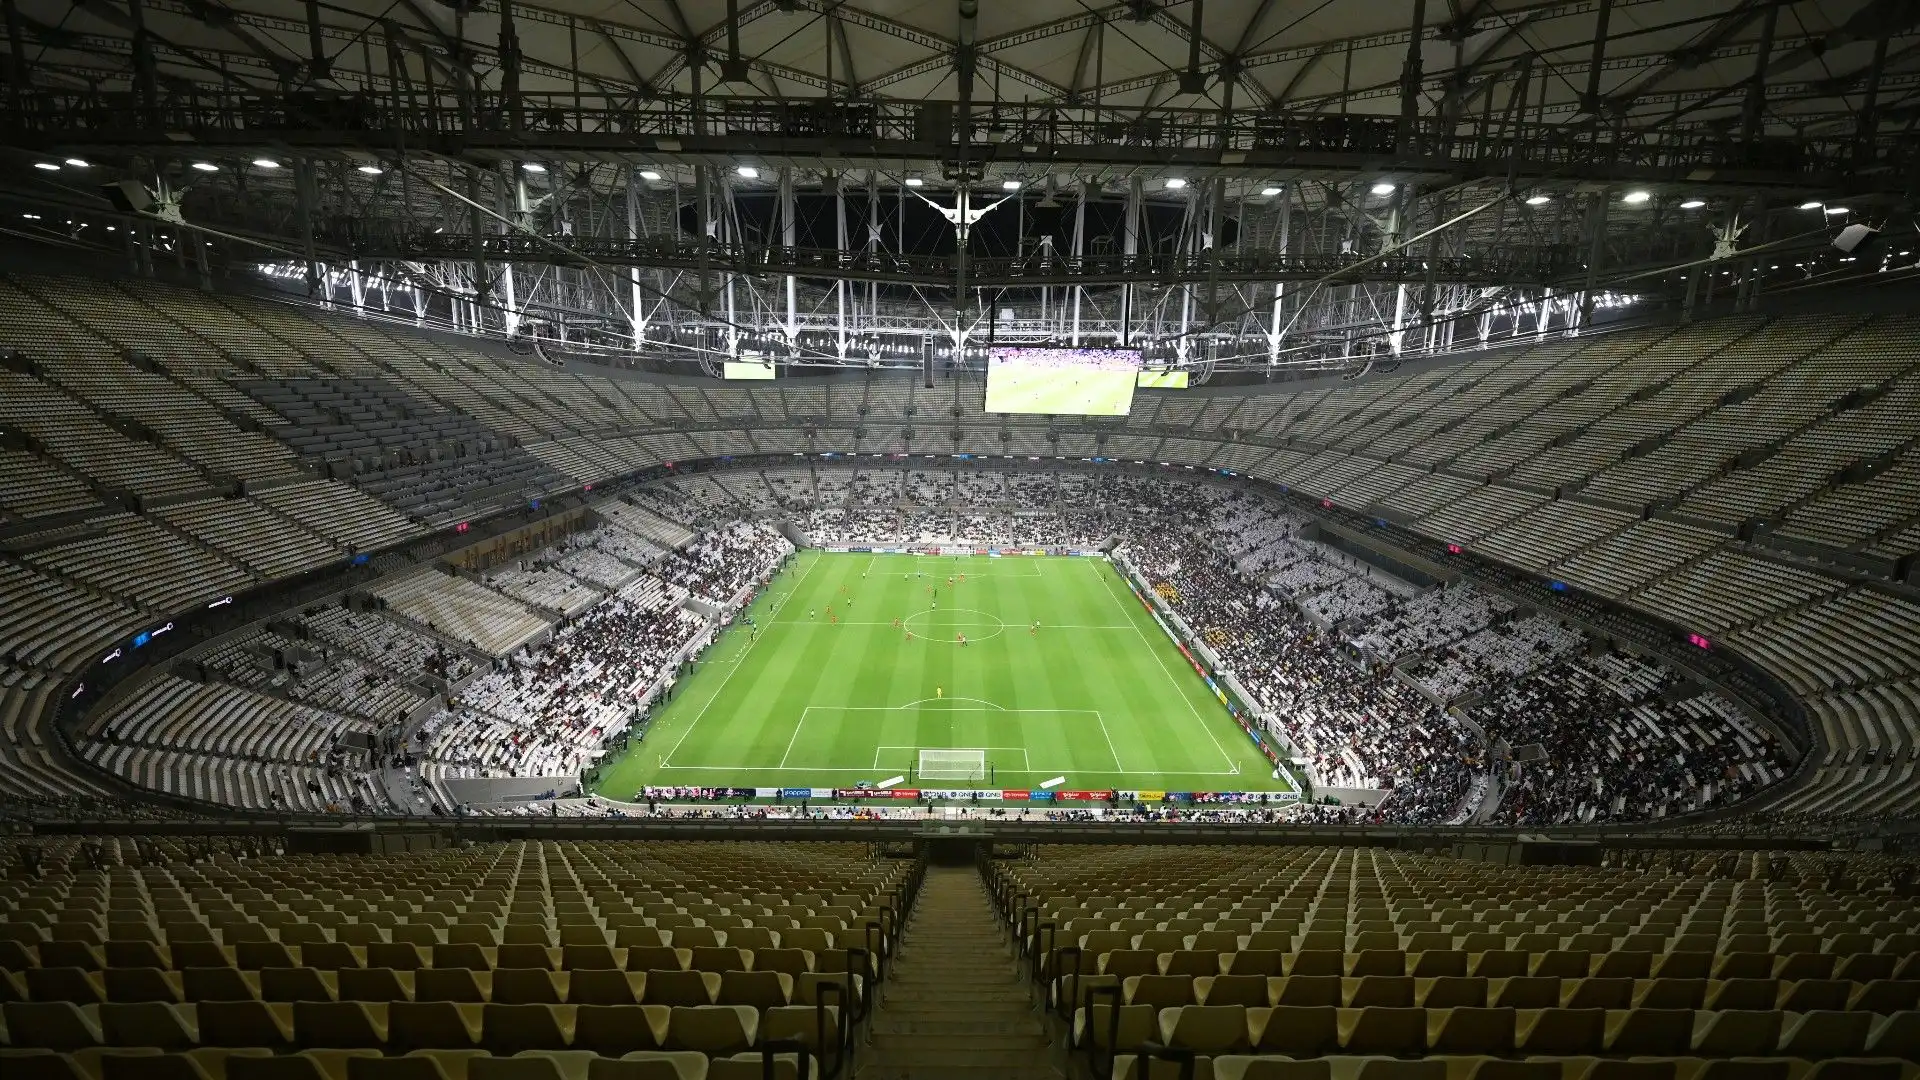 Una visione generale dello stadio